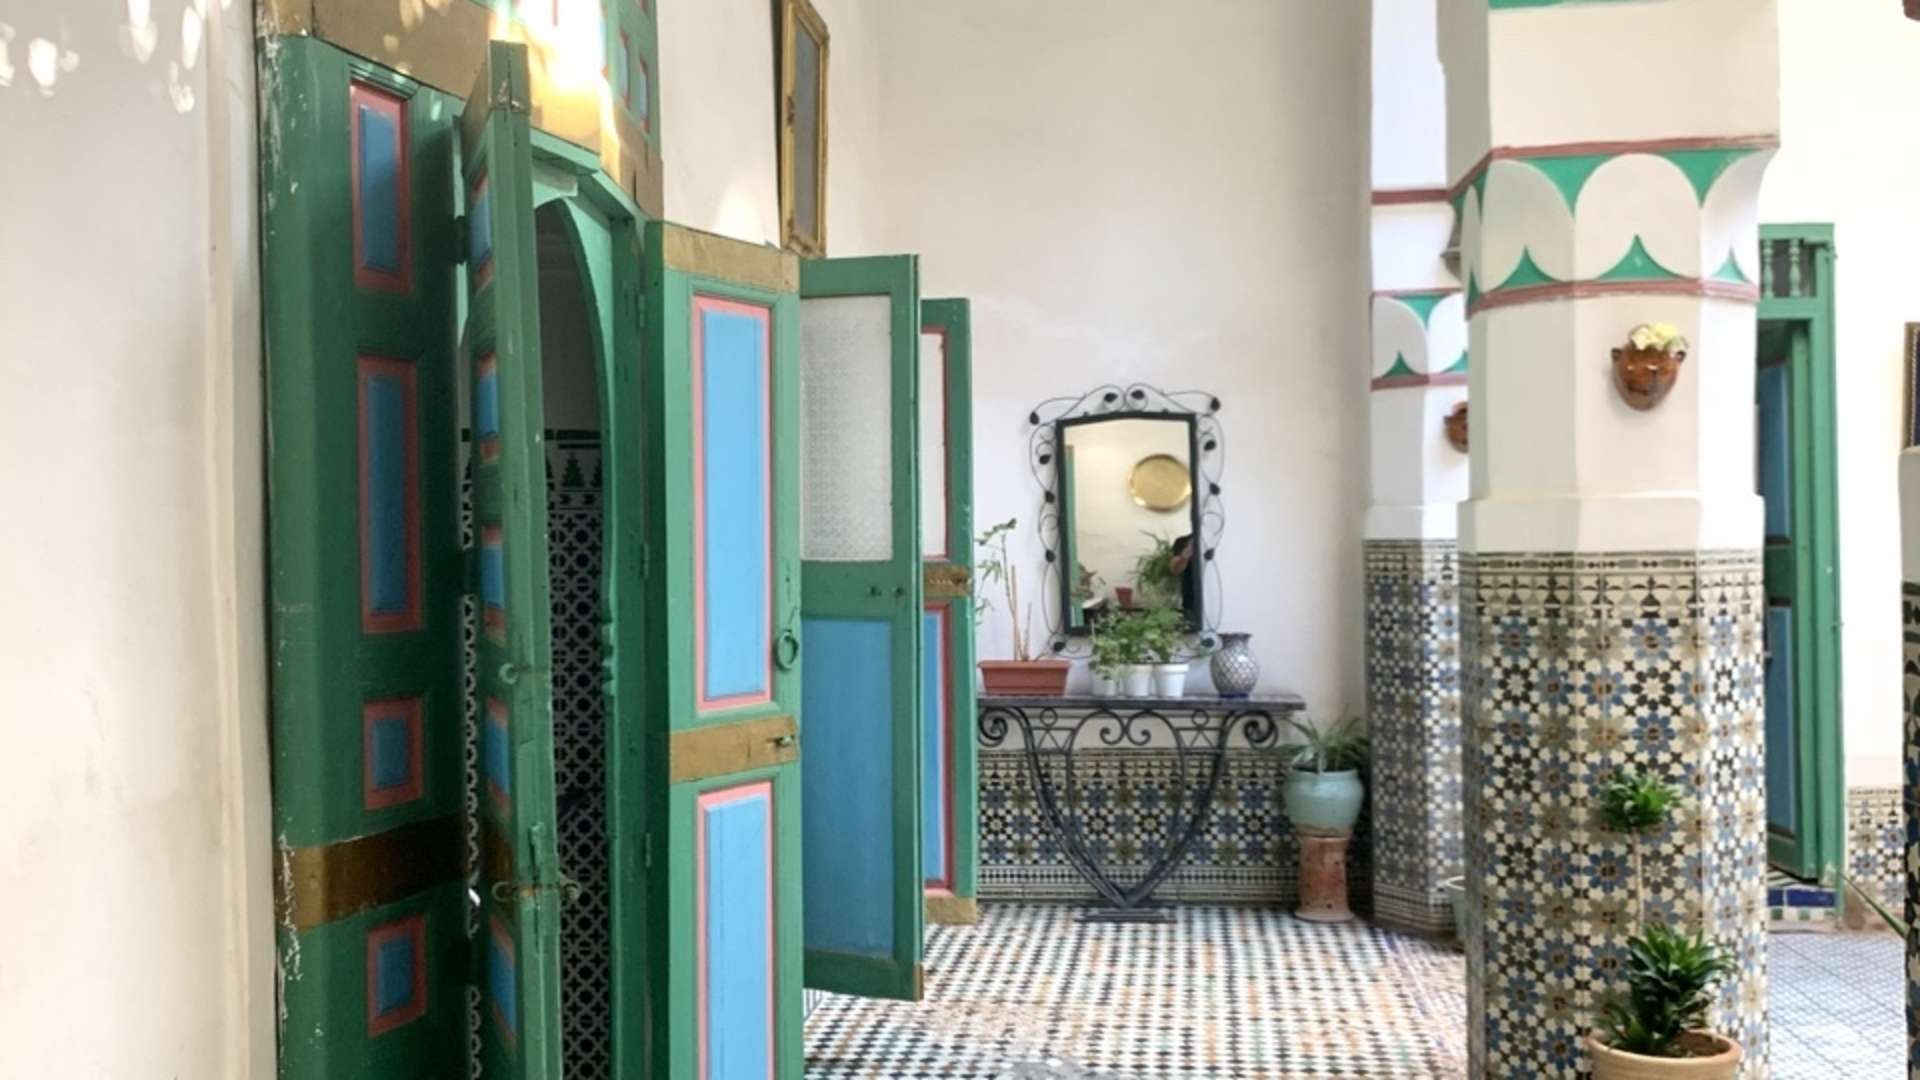 Vente,Riad,Somptueux riad à vendre à Marrakech. 9 pièces. Jardin et terrasse,Marrakech,Médina